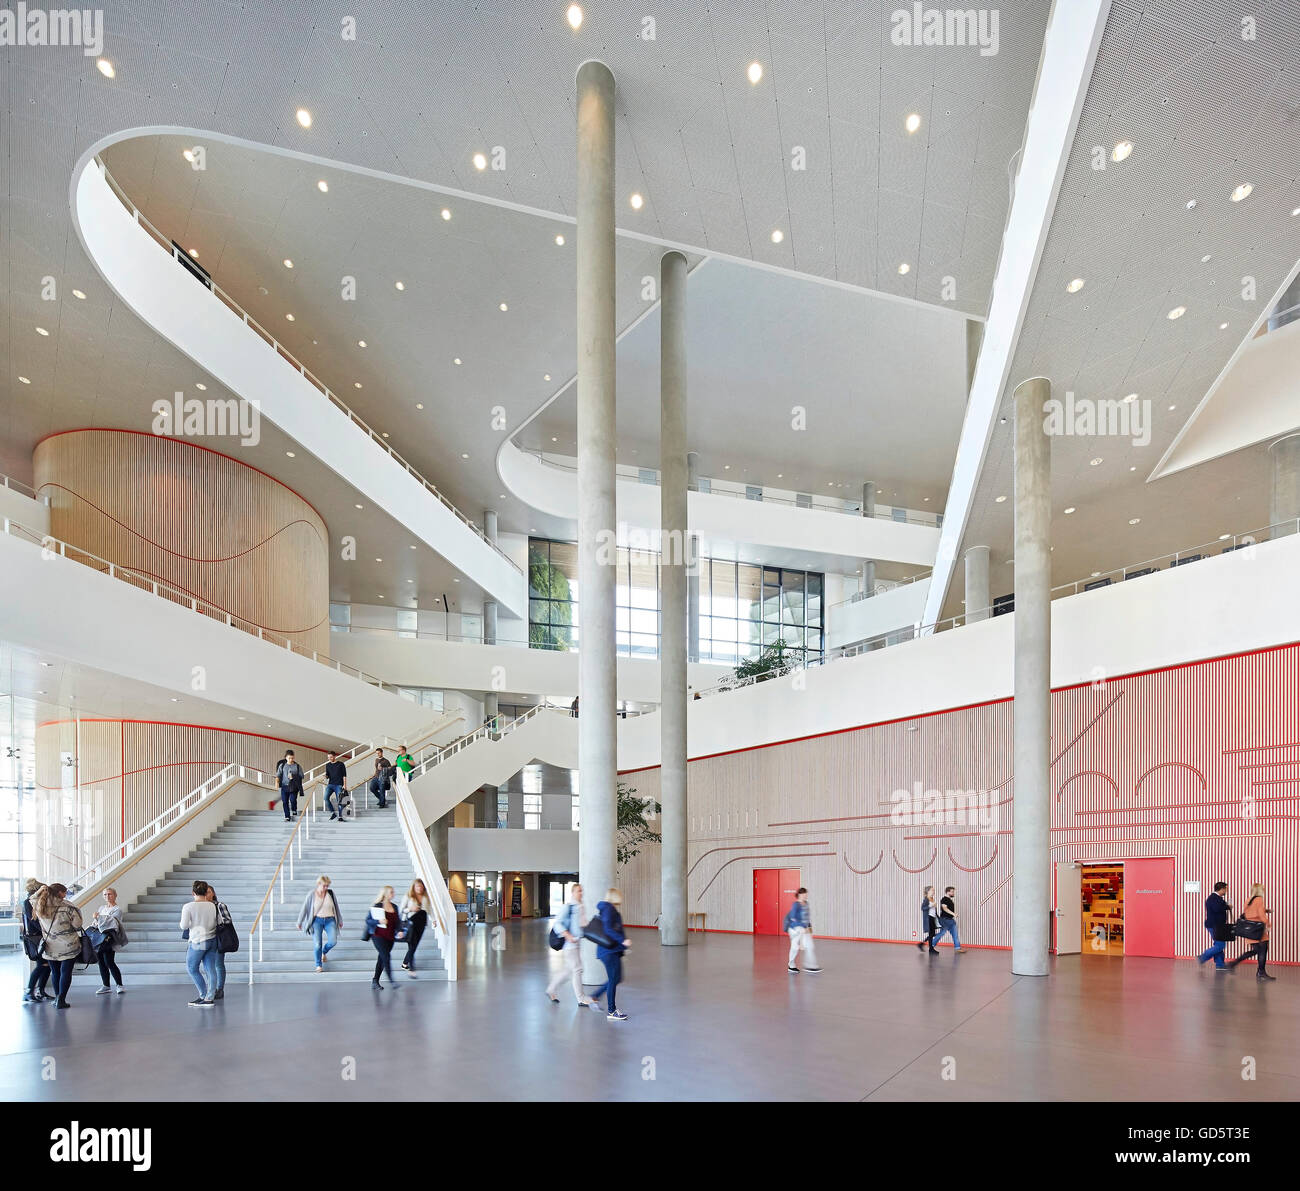 Eingang Foyer und mehrstöckige Atrium mit Balkonen und Spalten. SDU Campus Kolding, Kolding, Dänemark. Architekt: Henning Larsen Architects, 2015. Stockfoto